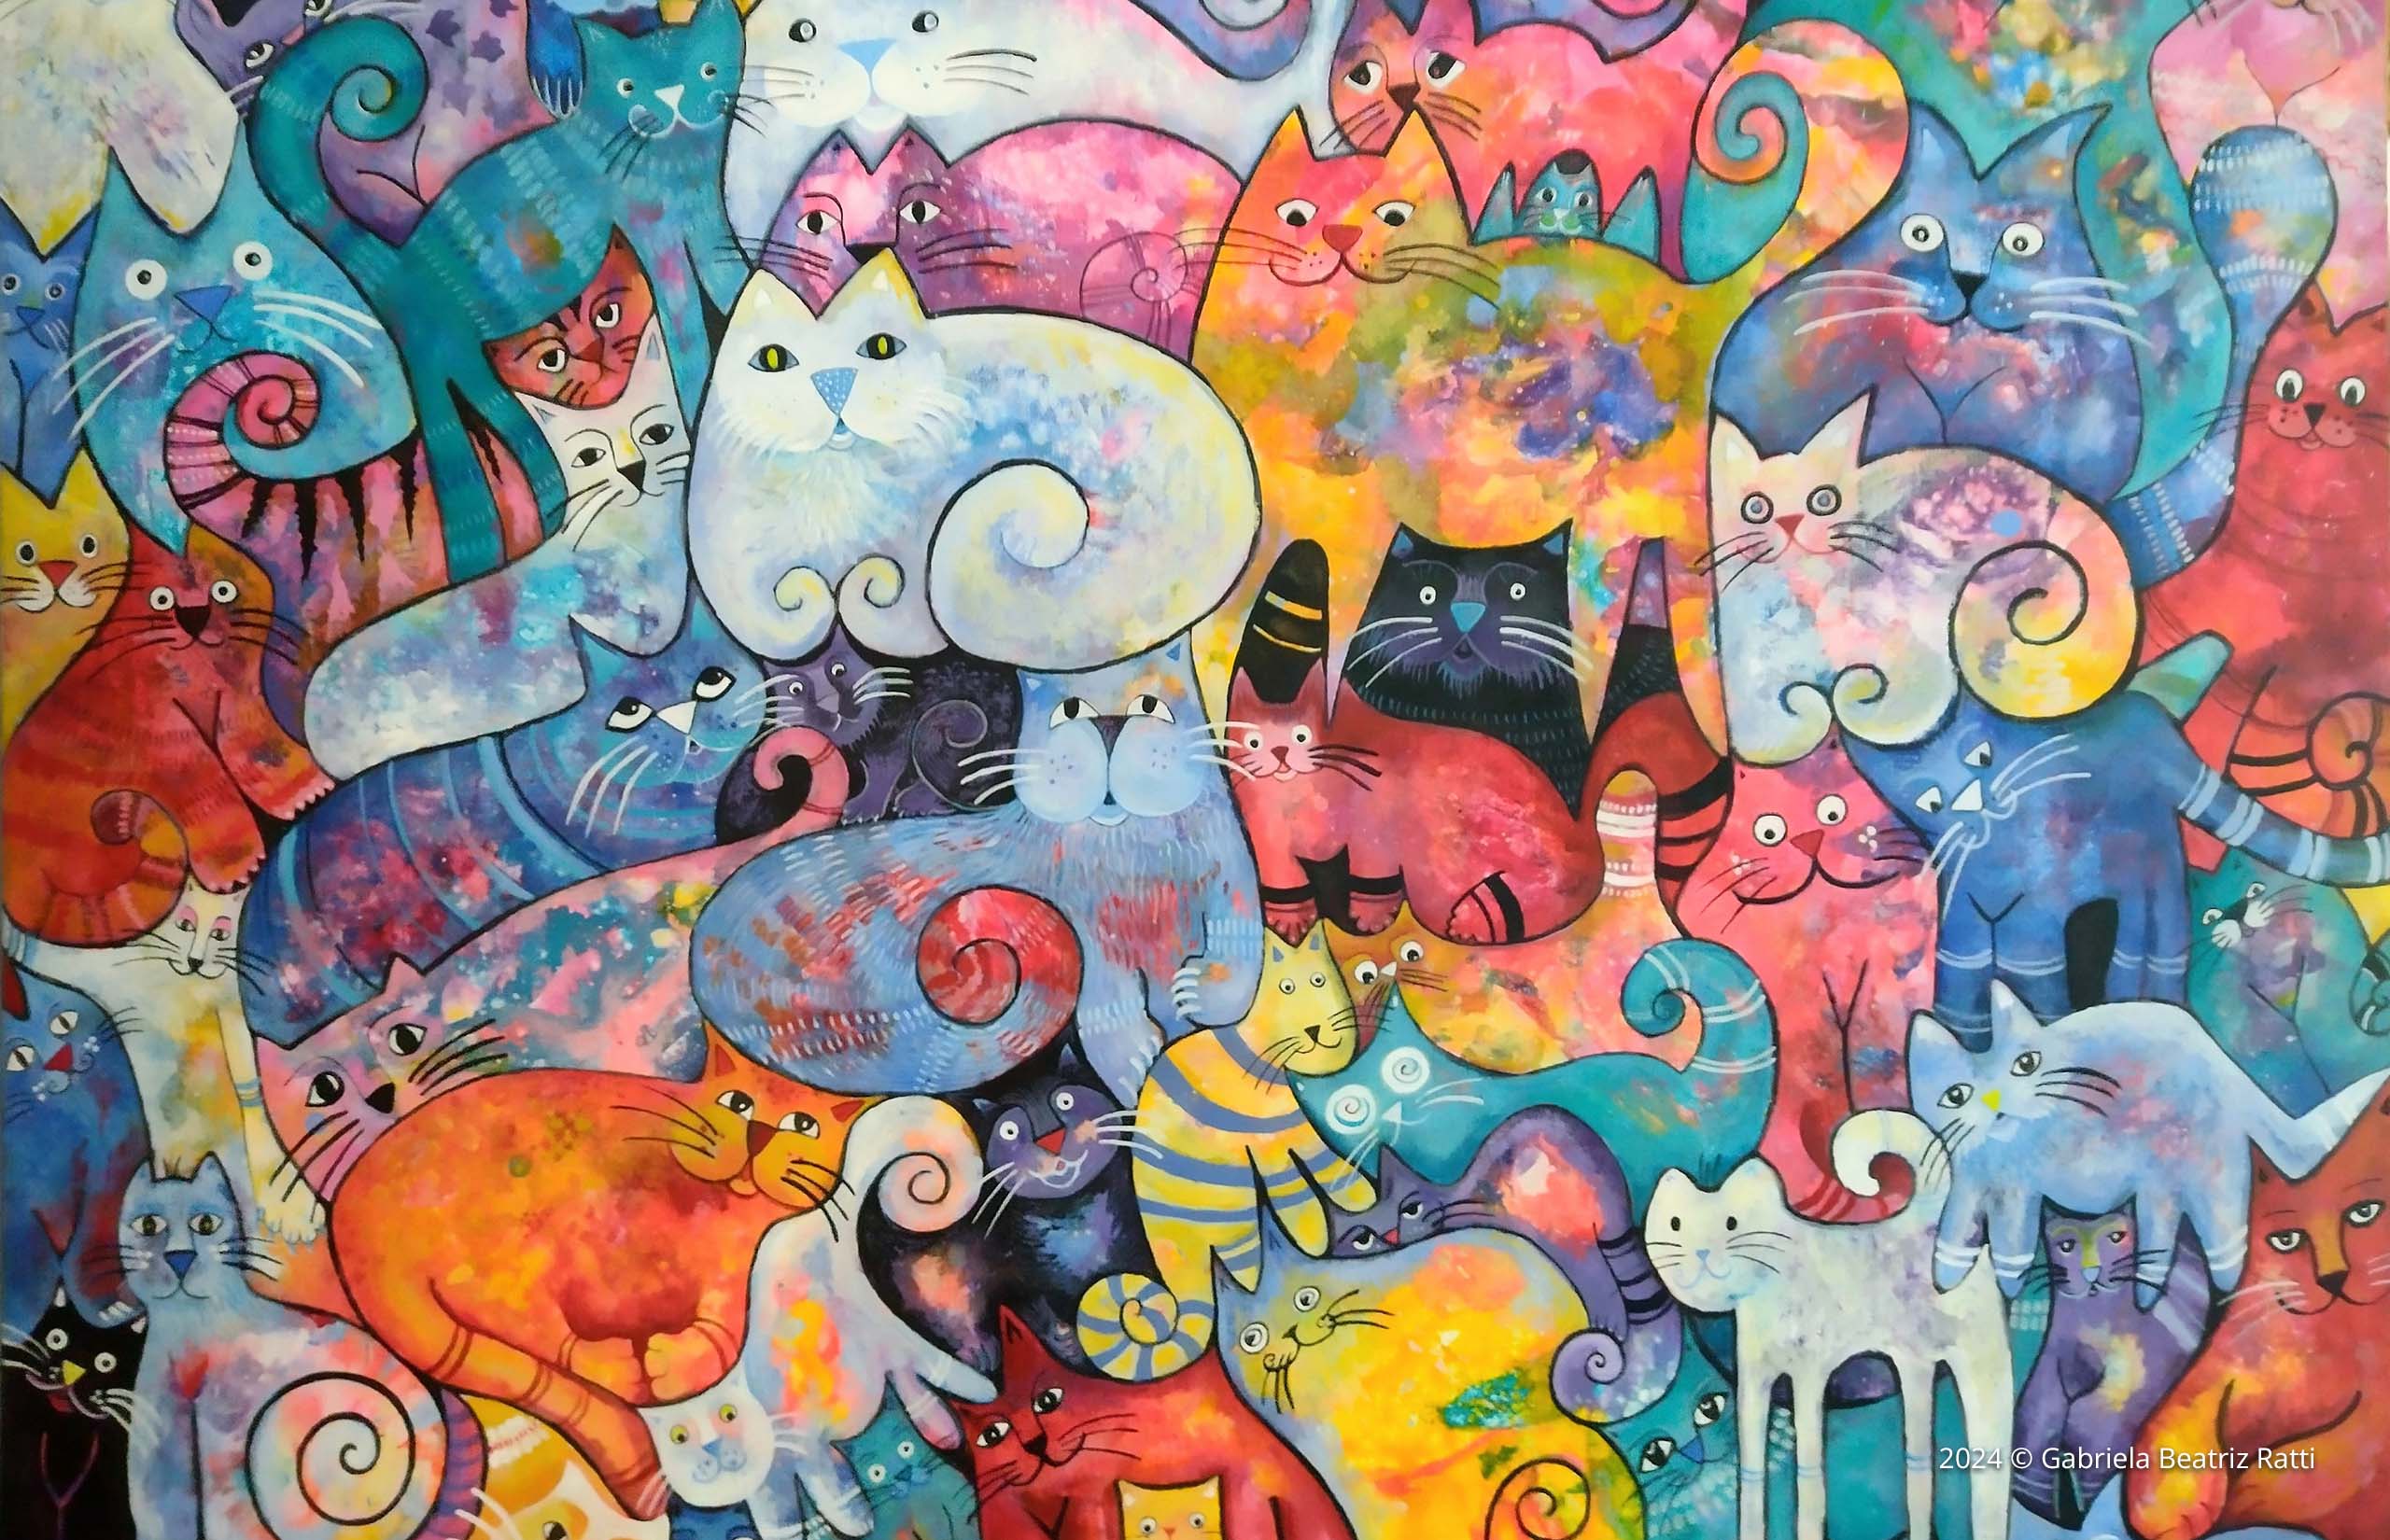 Arte gira e colorida de gatos!